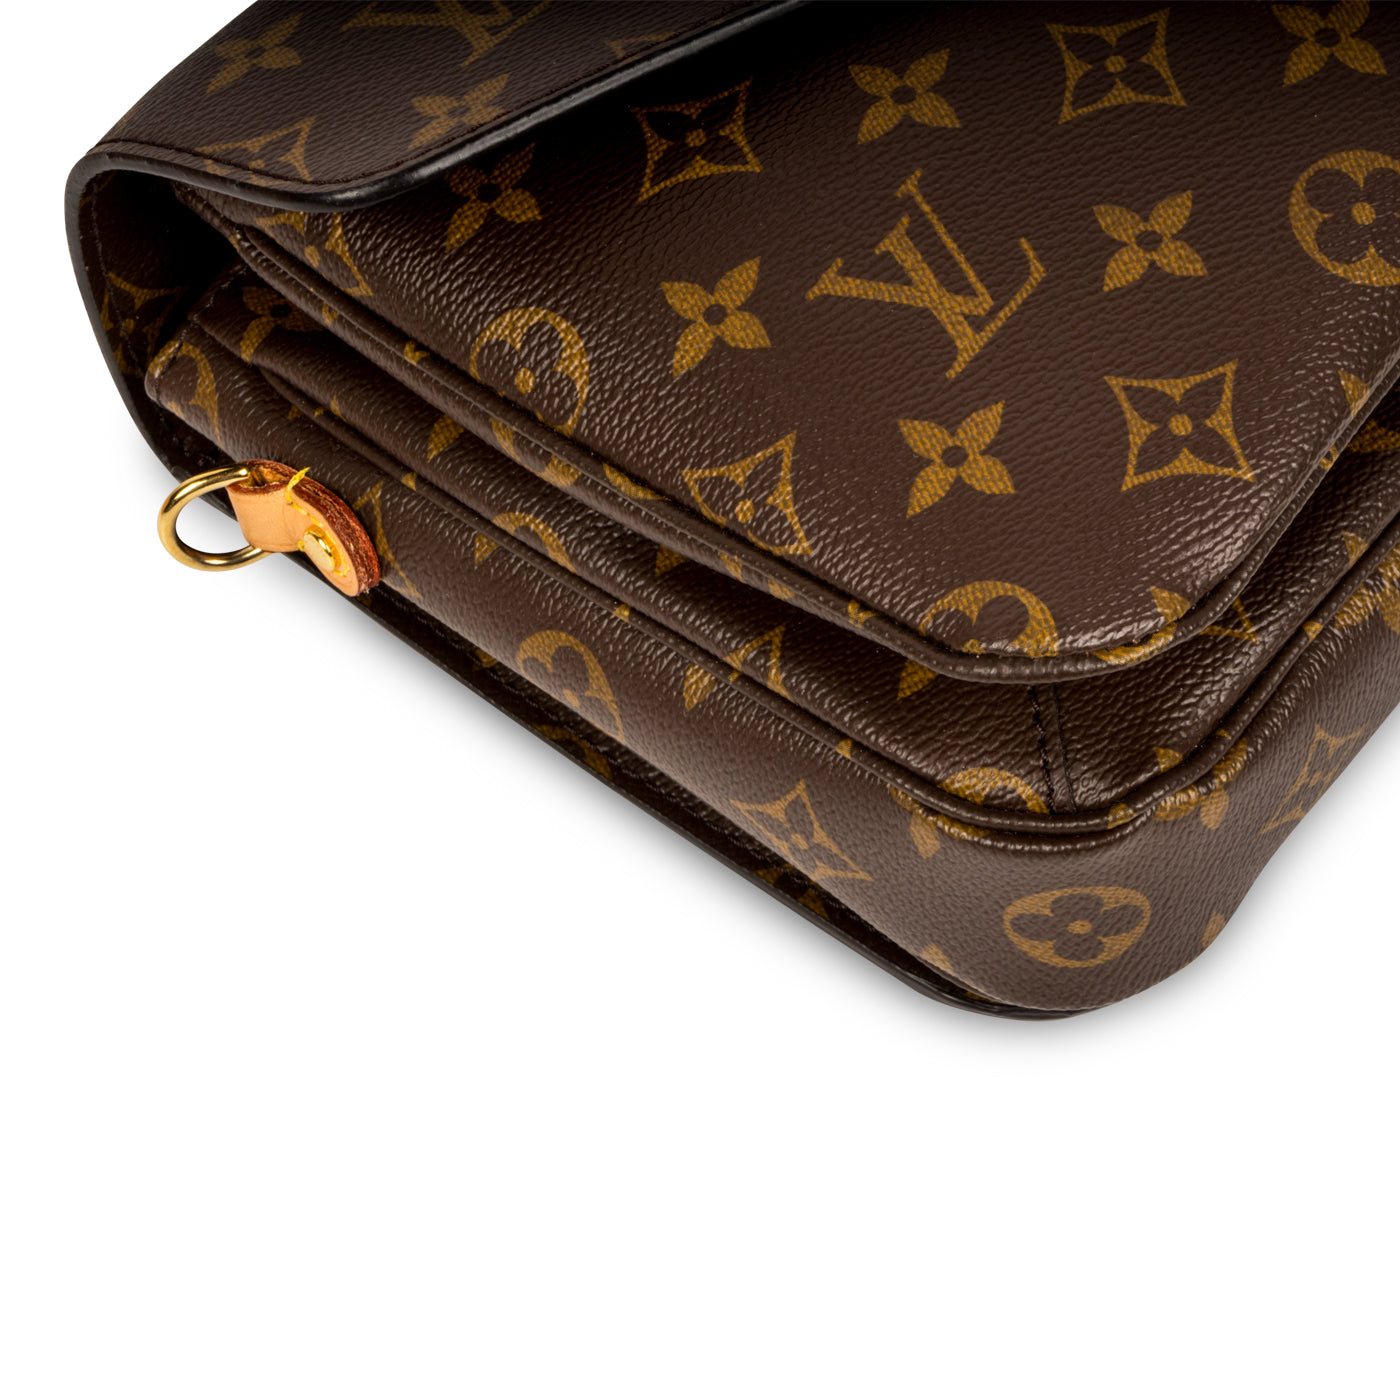 Second Hand Louis Vuitton Metis Bags, UhfmrShops